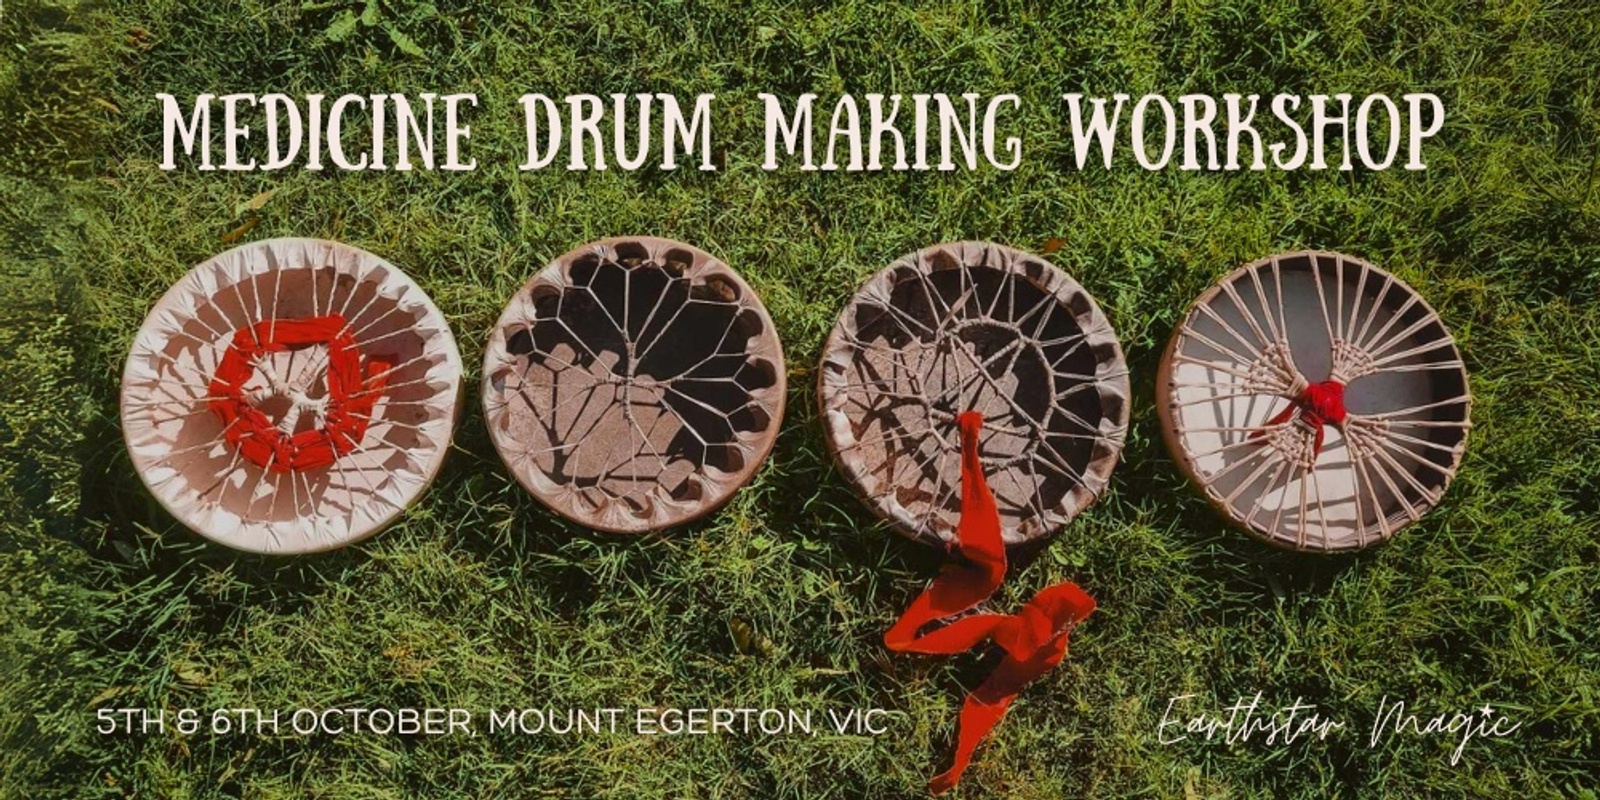 Banner image for Earthstar Magic Spring Medicine Drum Making Workshop